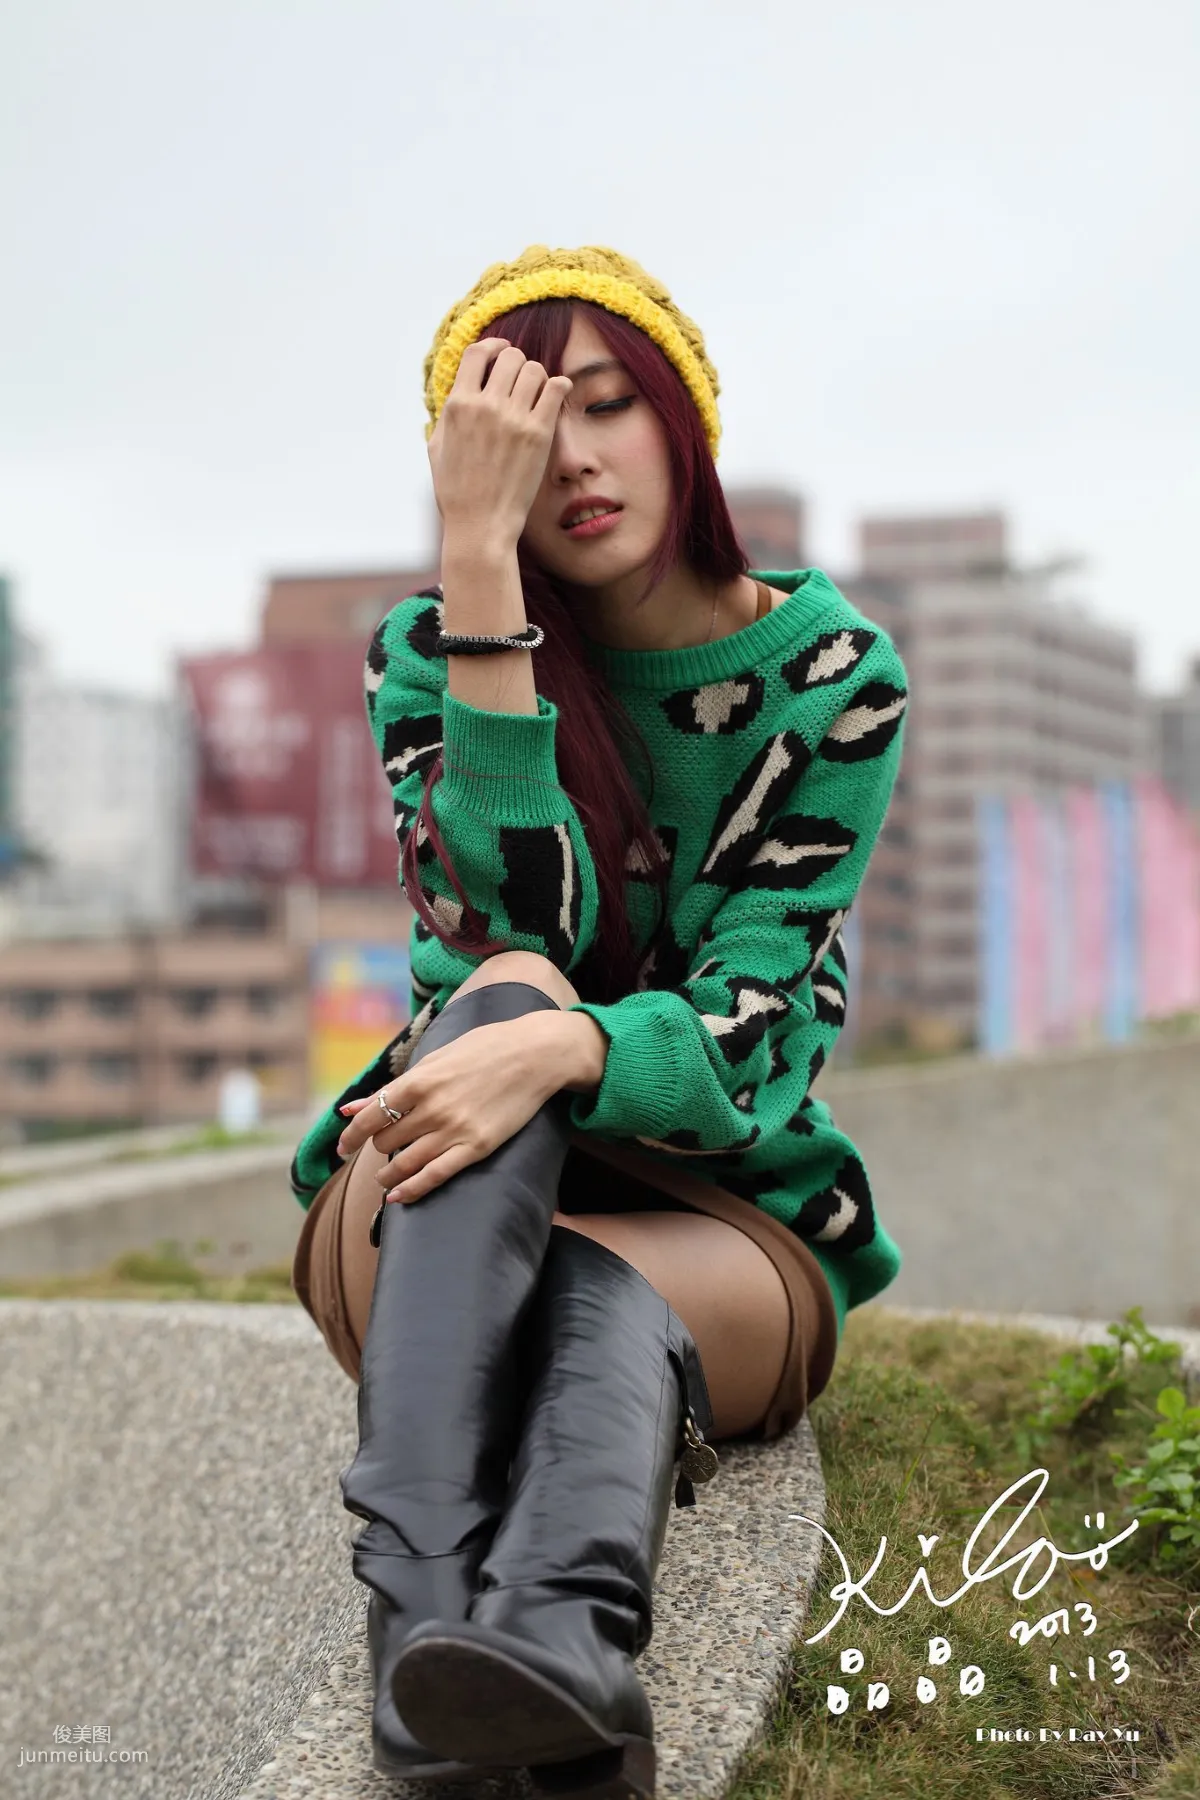 台湾模特廖挺伶/Kila晶晶《绿色长衣+长靴》街拍写真集6